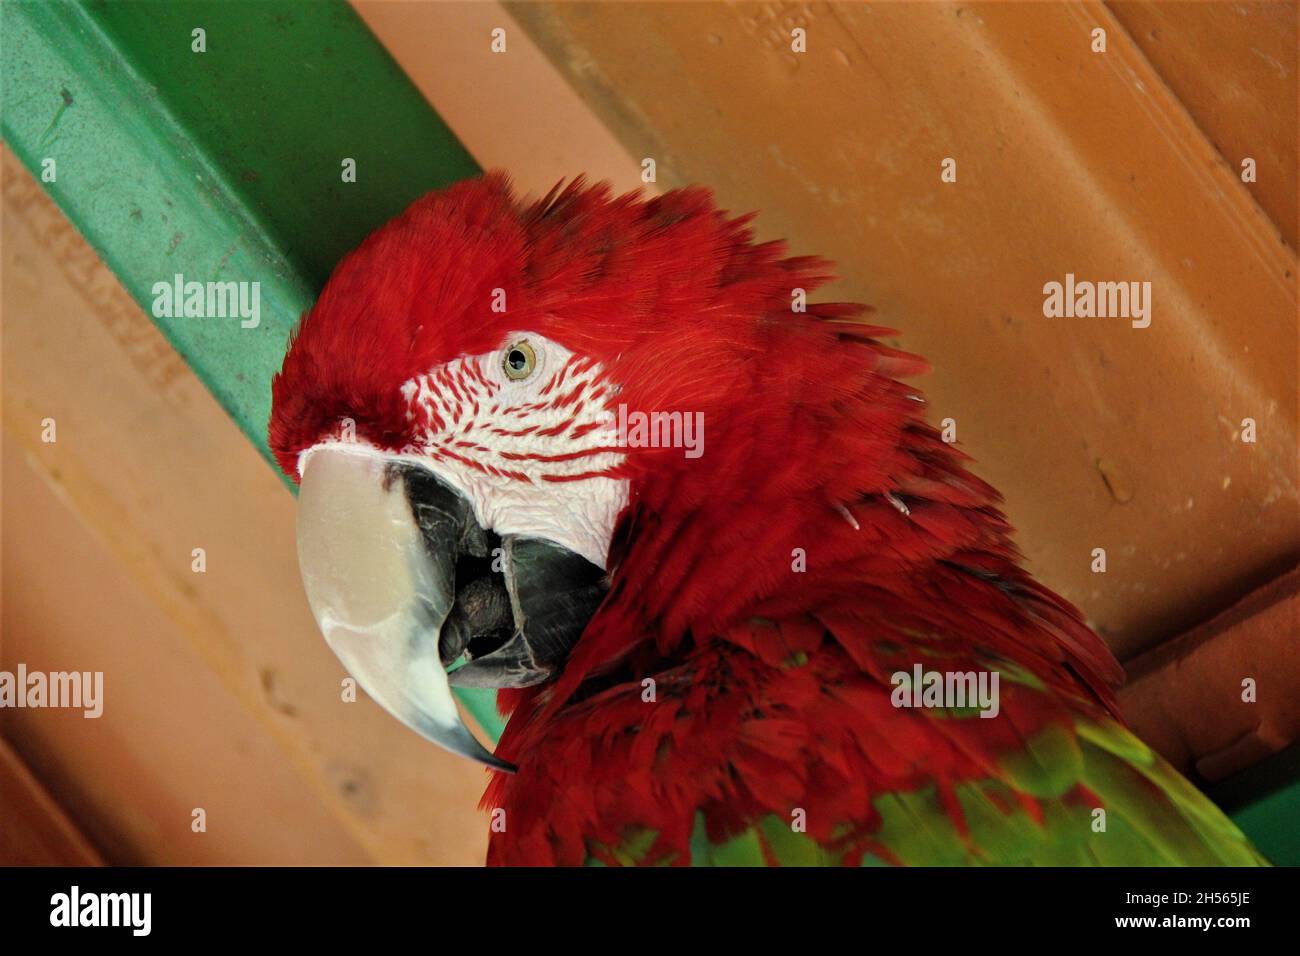 Nahaufnahme auf dem Gesicht eines Papageien, roter Ara, Blick auf die Fotokamera in Bonito - Mato Grosso do Sul - Brasilien. Stockfoto